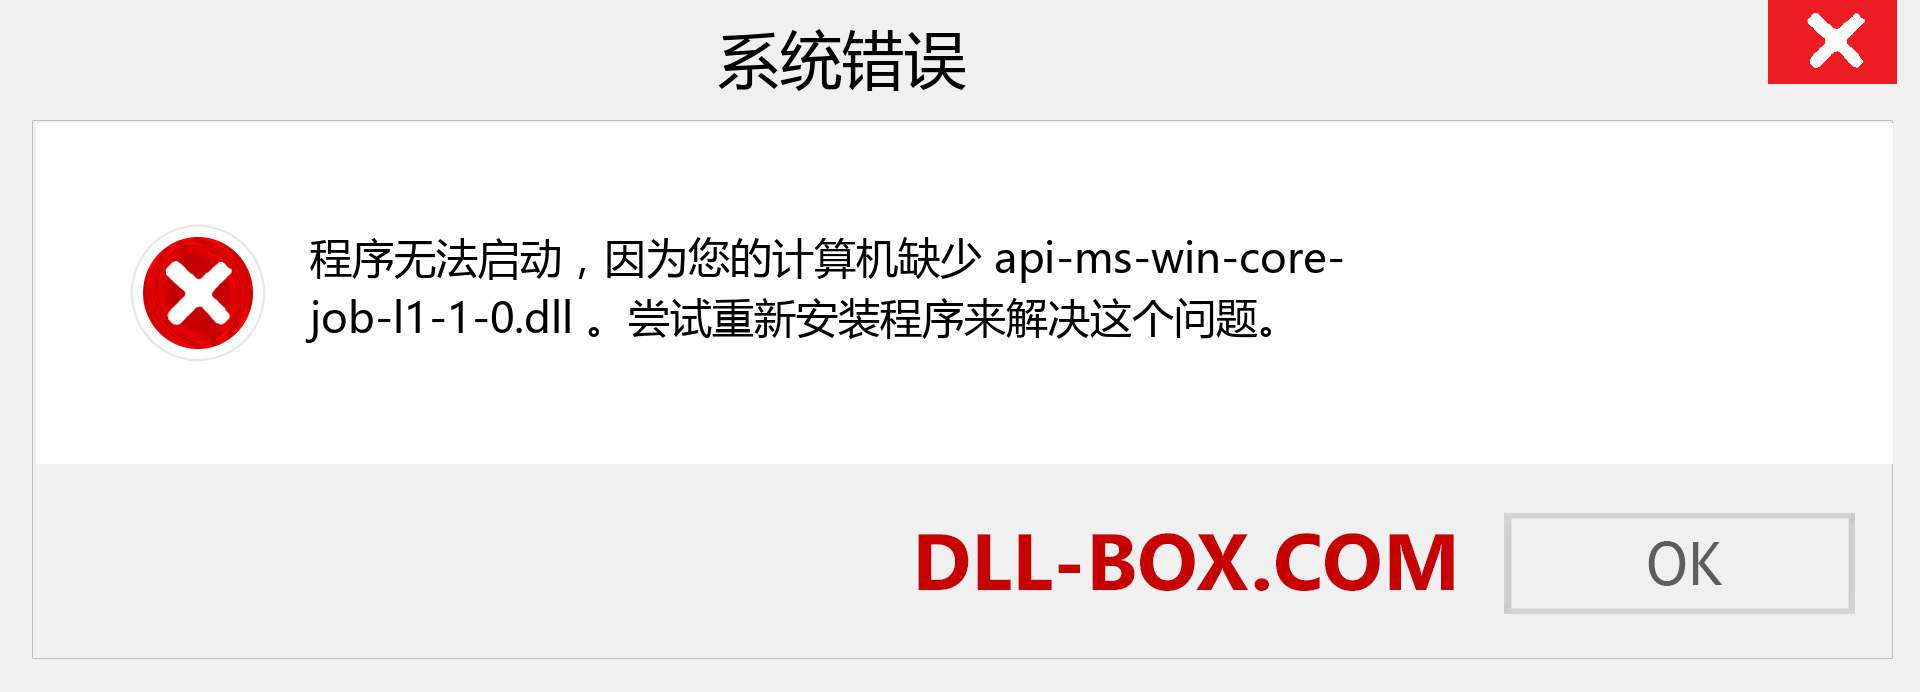 api-ms-win-core-job-l1-1-0.dll 文件丢失？。 适用于 Windows 7、8、10 的下载 - 修复 Windows、照片、图像上的 api-ms-win-core-job-l1-1-0 dll 丢失错误